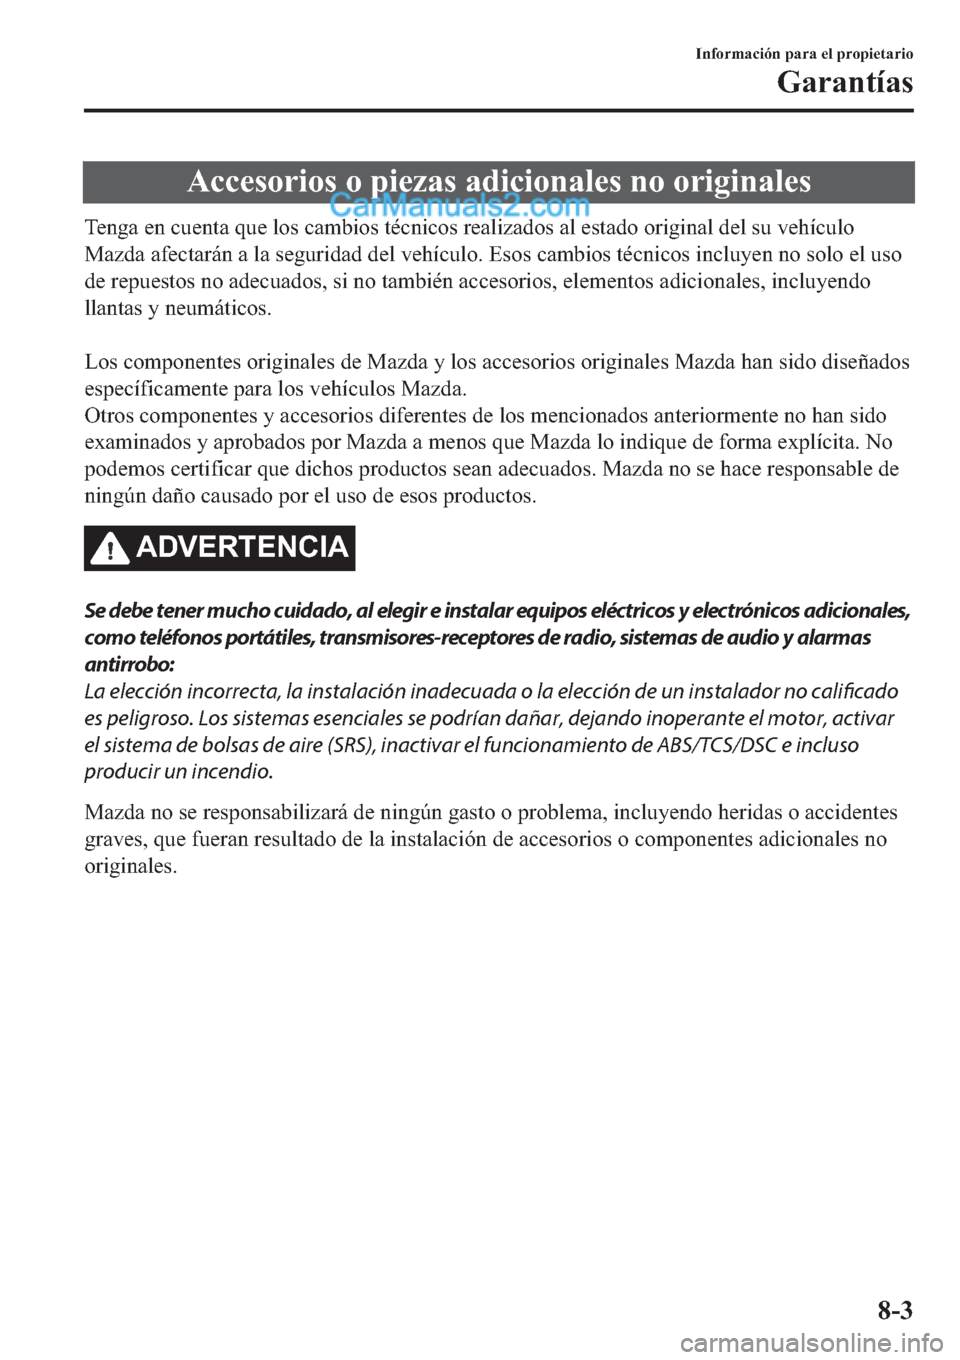 MAZDA MODEL 2 2019  Manual del propietario (in Spanish) �$�F�F�H�V�R�U�L�R�V��R��S�L�H�]�D�V��D�G�L�F�L�R�Q�D�O�H�V��Q�R��R�U�L�J�L�Q�D�O�H�V
�7�H�Q�J�D��H�Q��F�X�H�Q�W�D��T�X�H��O�R�V��F�D�P�E�L�R�V��W�p�F�Q�L�F�R�V��U�H�D�O�L�]�D�G�R�V��D�O�